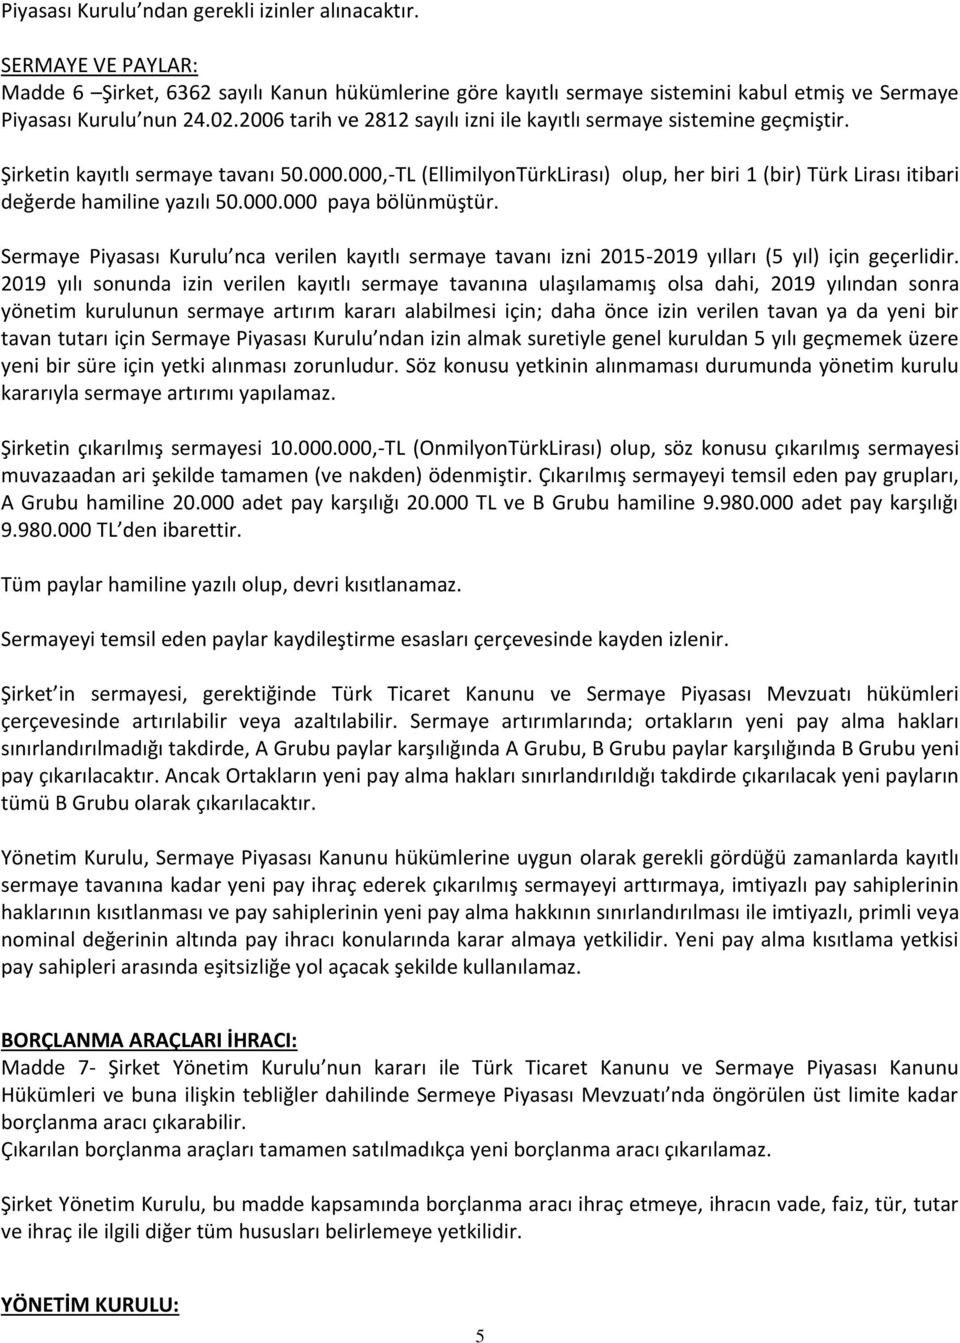 000,-TL (EllimilyonTürkLirası) olup, her biri 1 (bir) Türk Lirası itibari değerde hamiline yazılı 50.000.000 paya bölünmüştür.